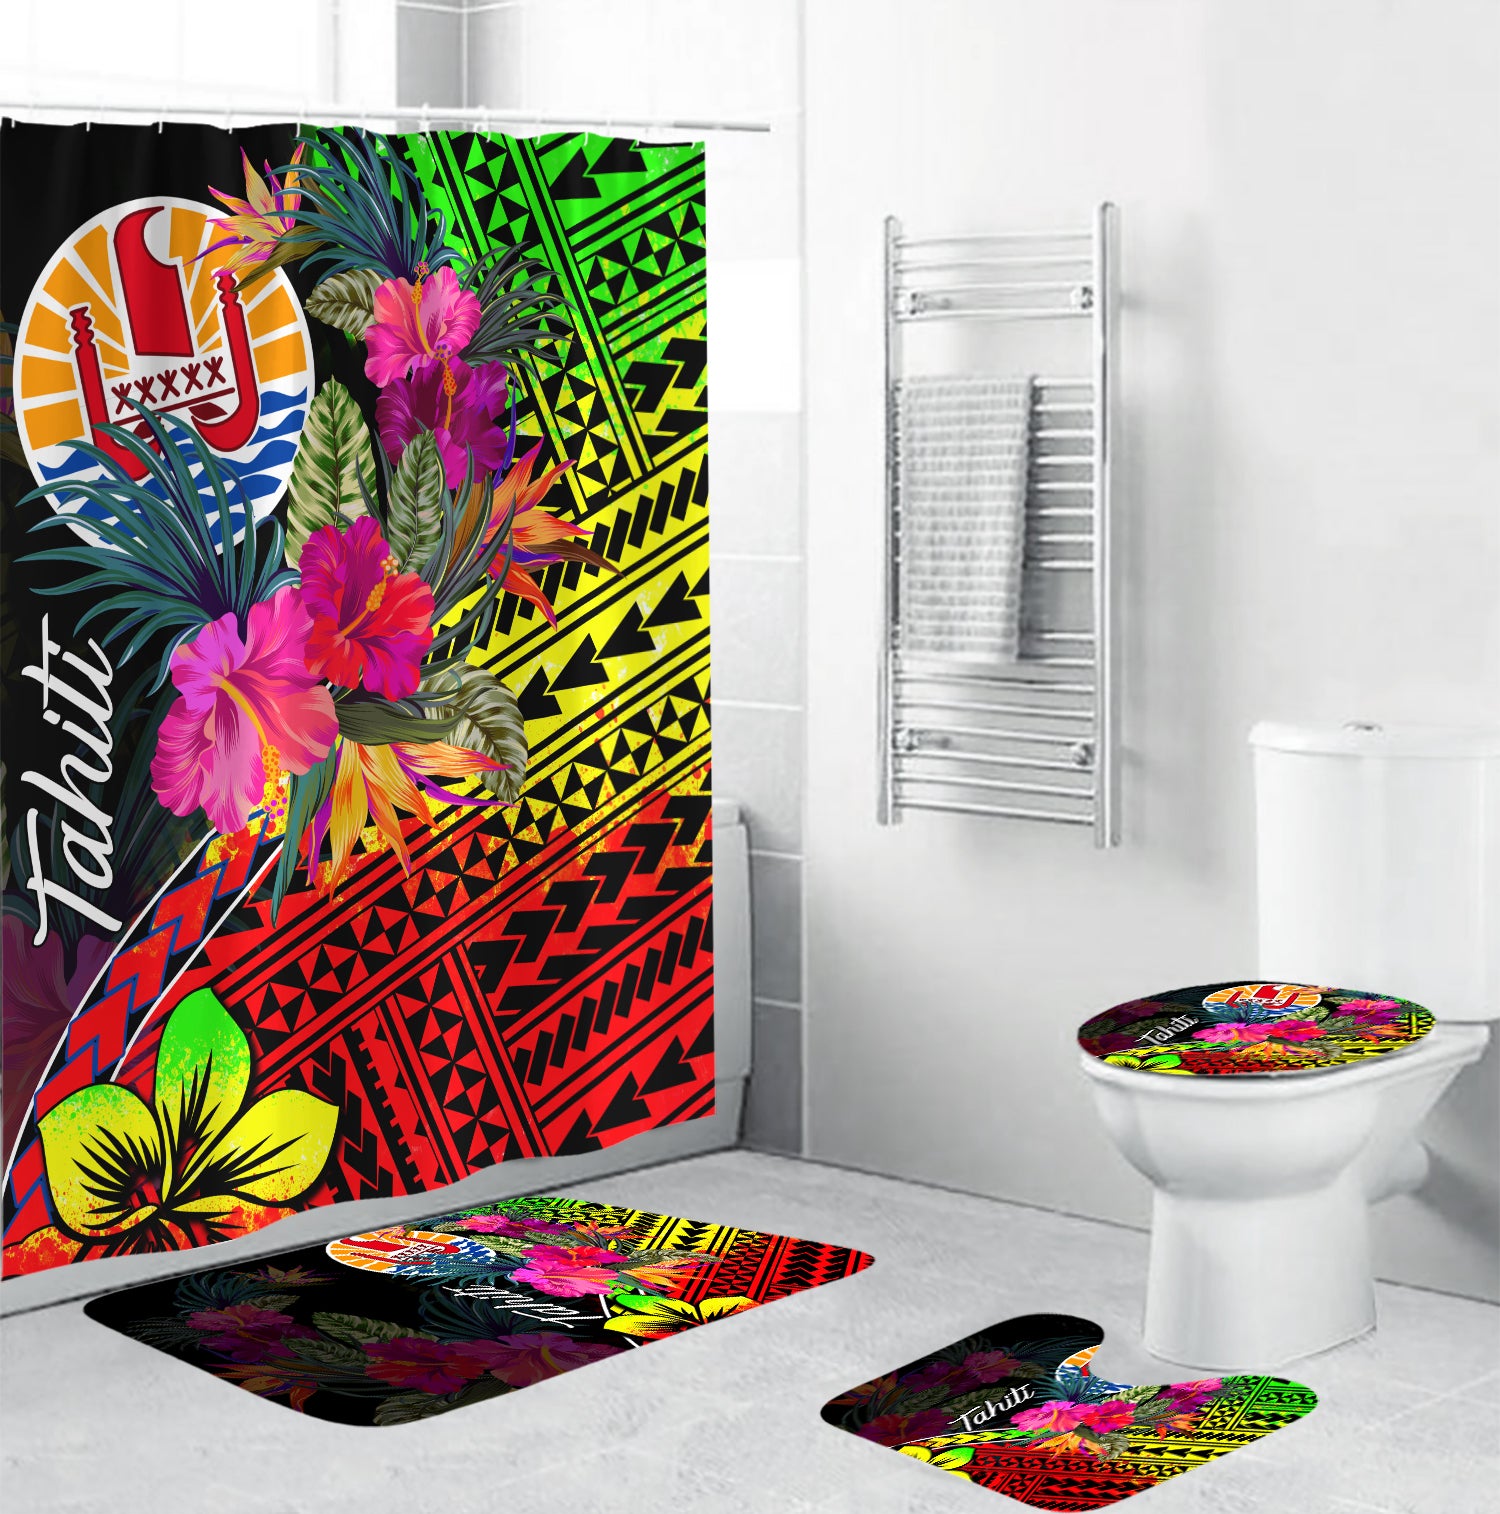 Tahiti Bathroom Set Polynesian With Hibiscus No.4 LT6 Black - Polynesian Pride